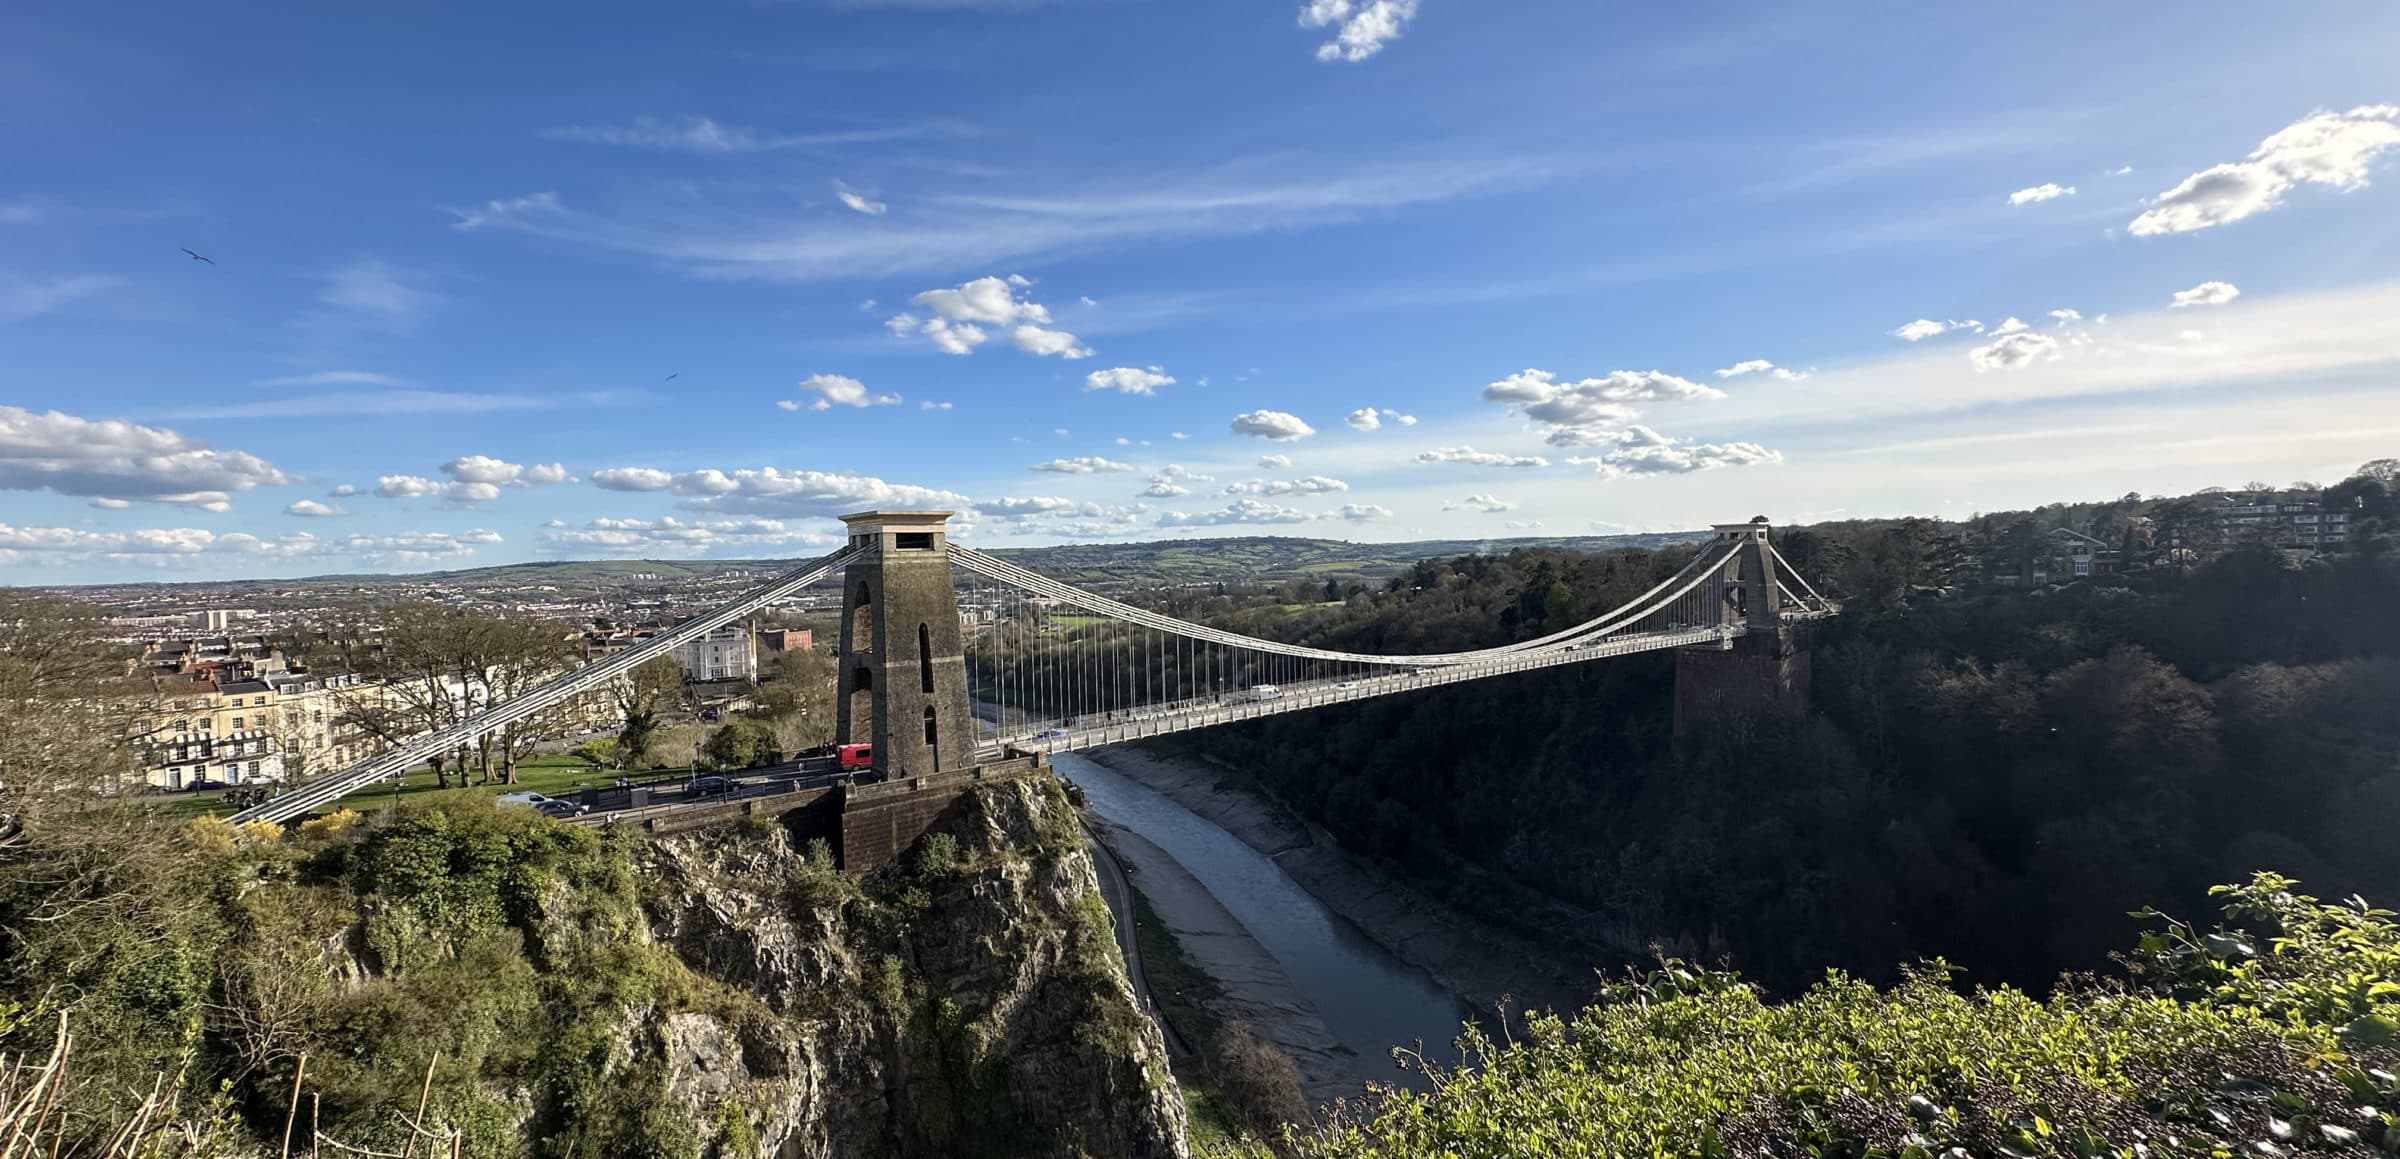 The Clifton Suspension Bridge